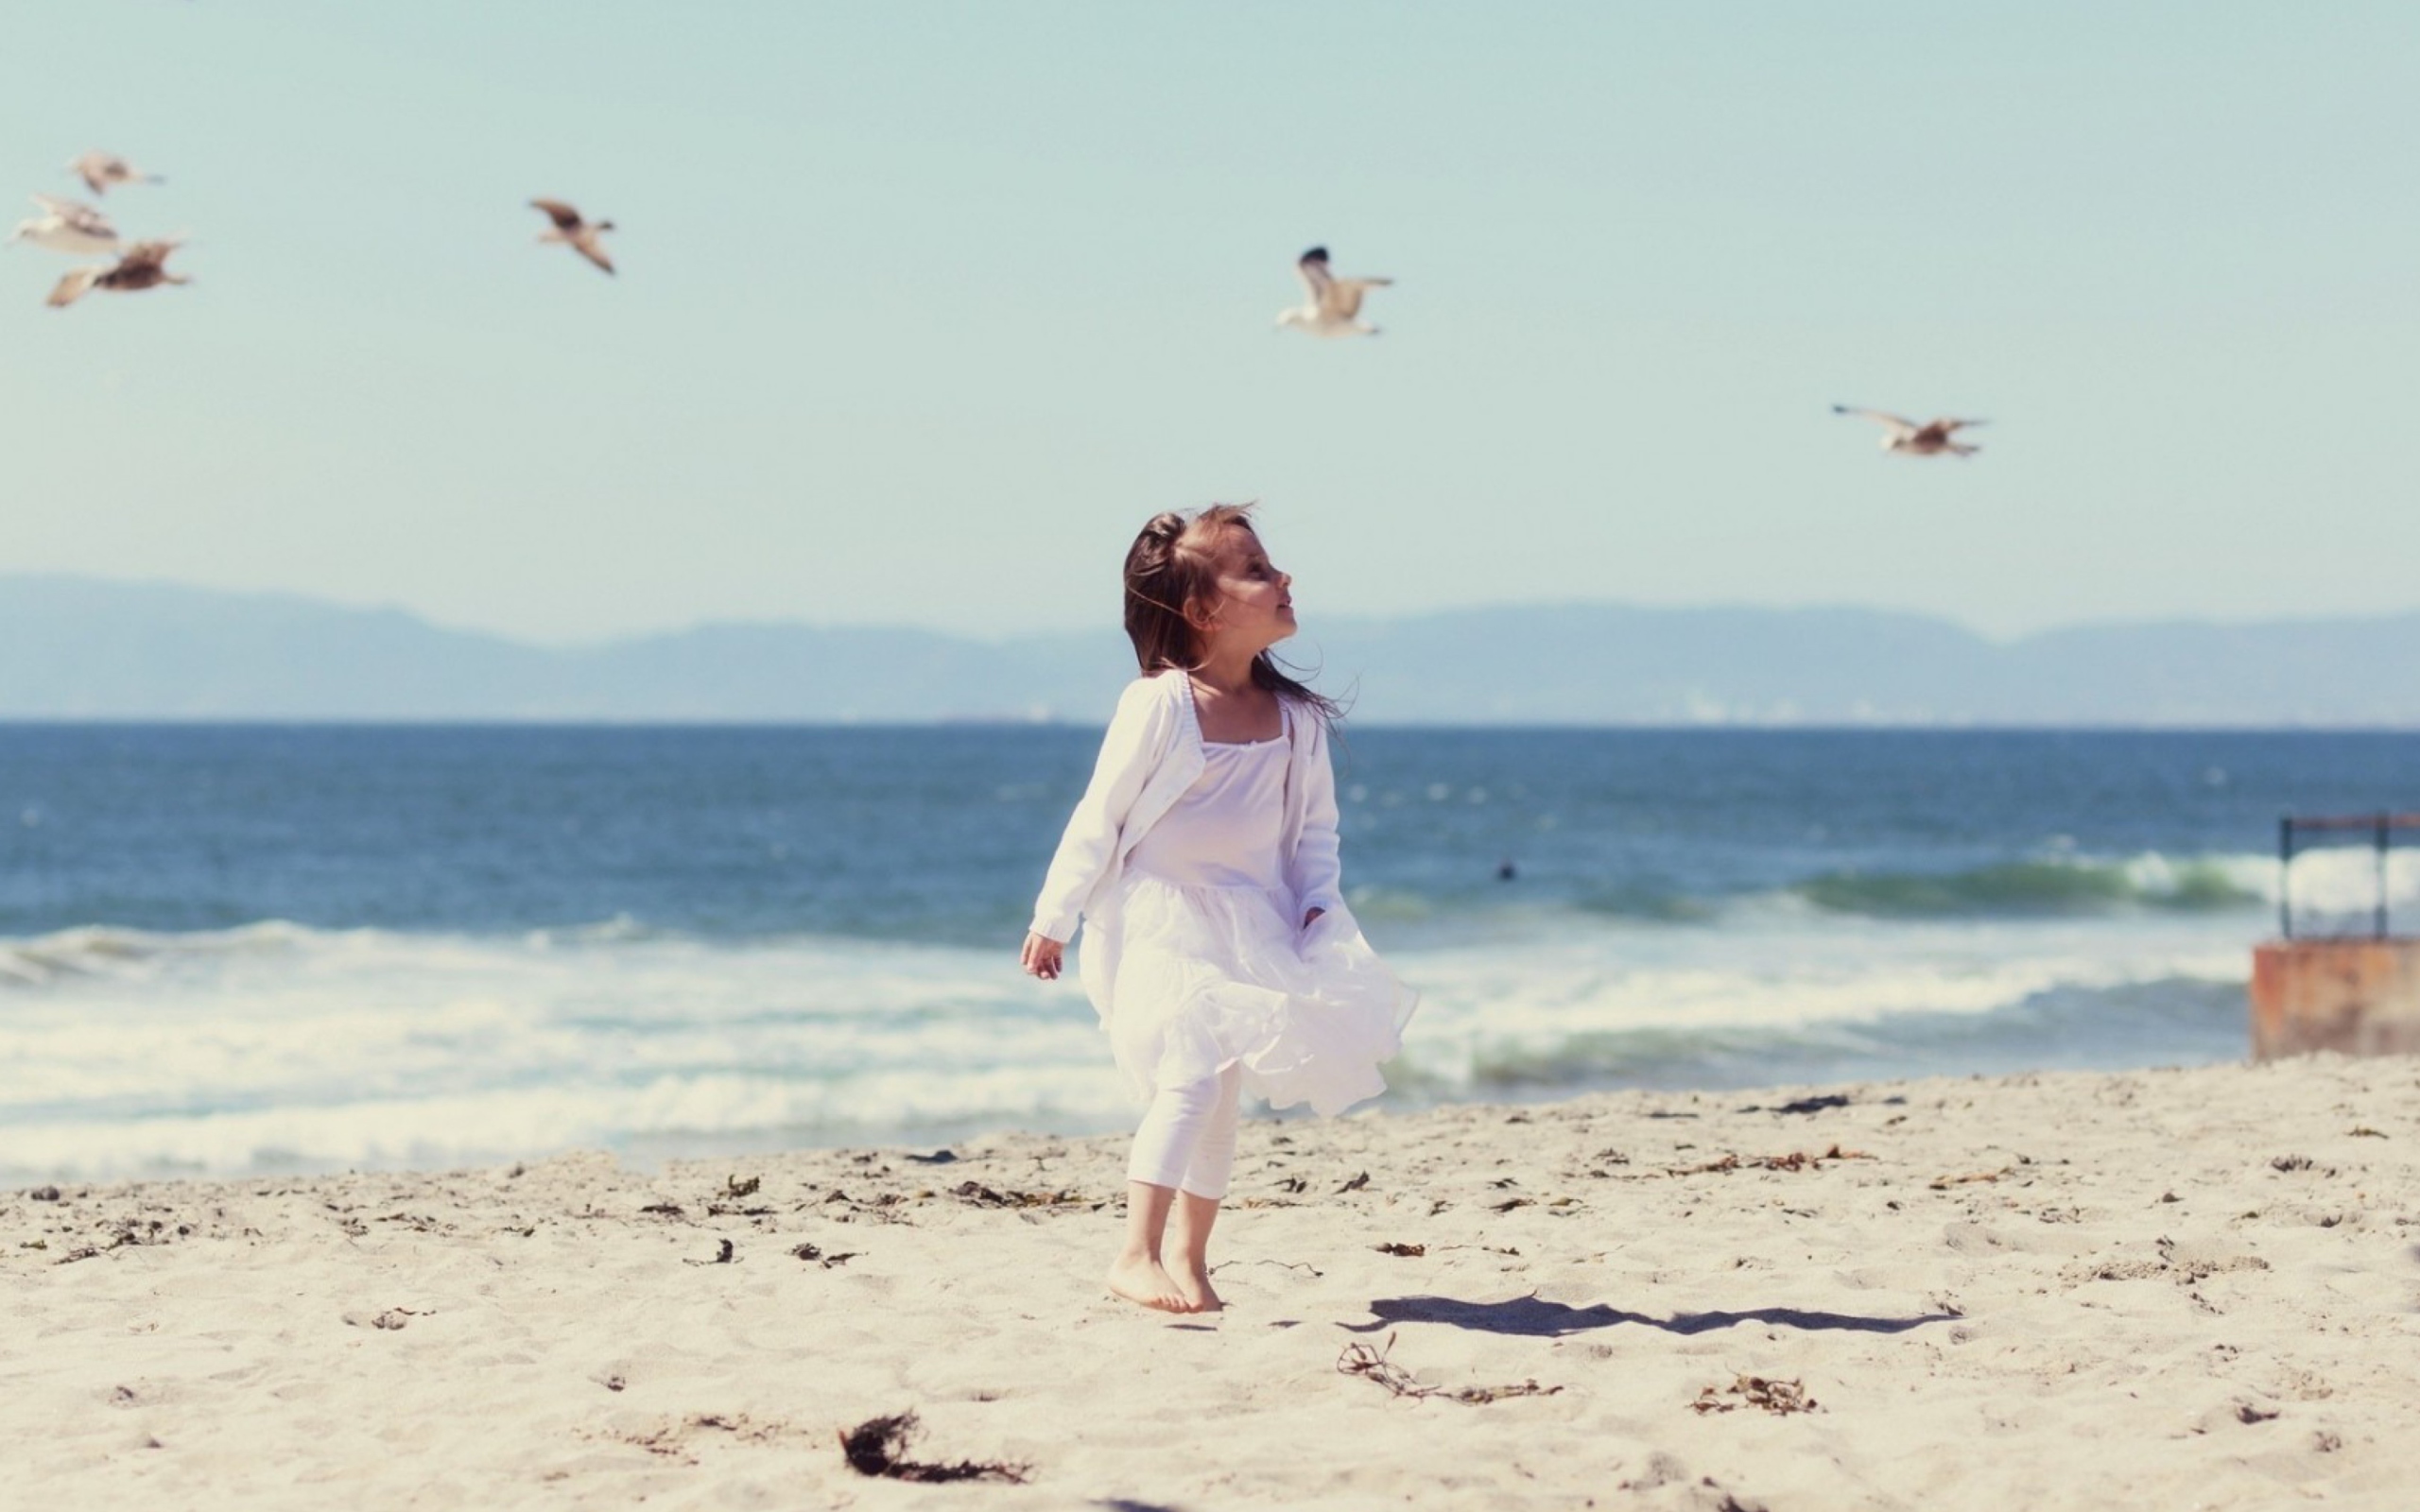 Das Little Girl And Seagulls On Beach Wallpaper 2560x1600